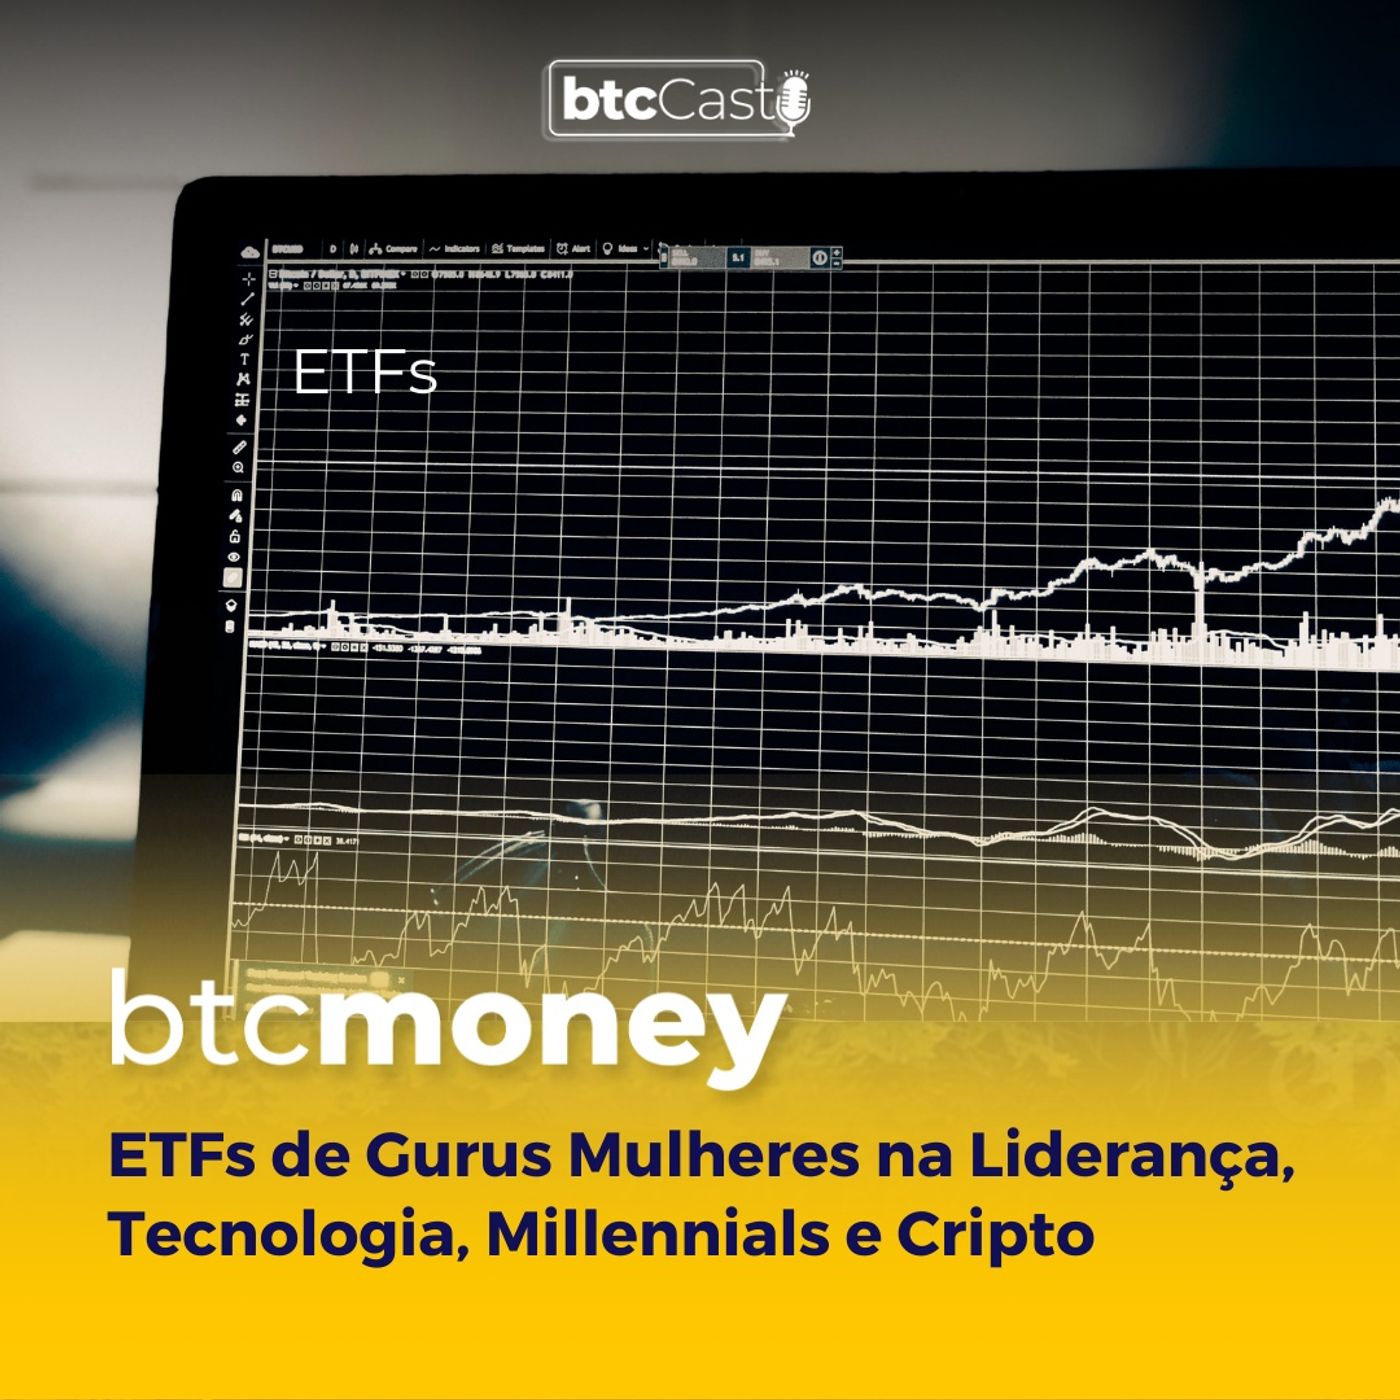 ETFs de Gurus, Mulheres na Liderança, Tecnologia, Millennials e Cripto | BTC Money #111